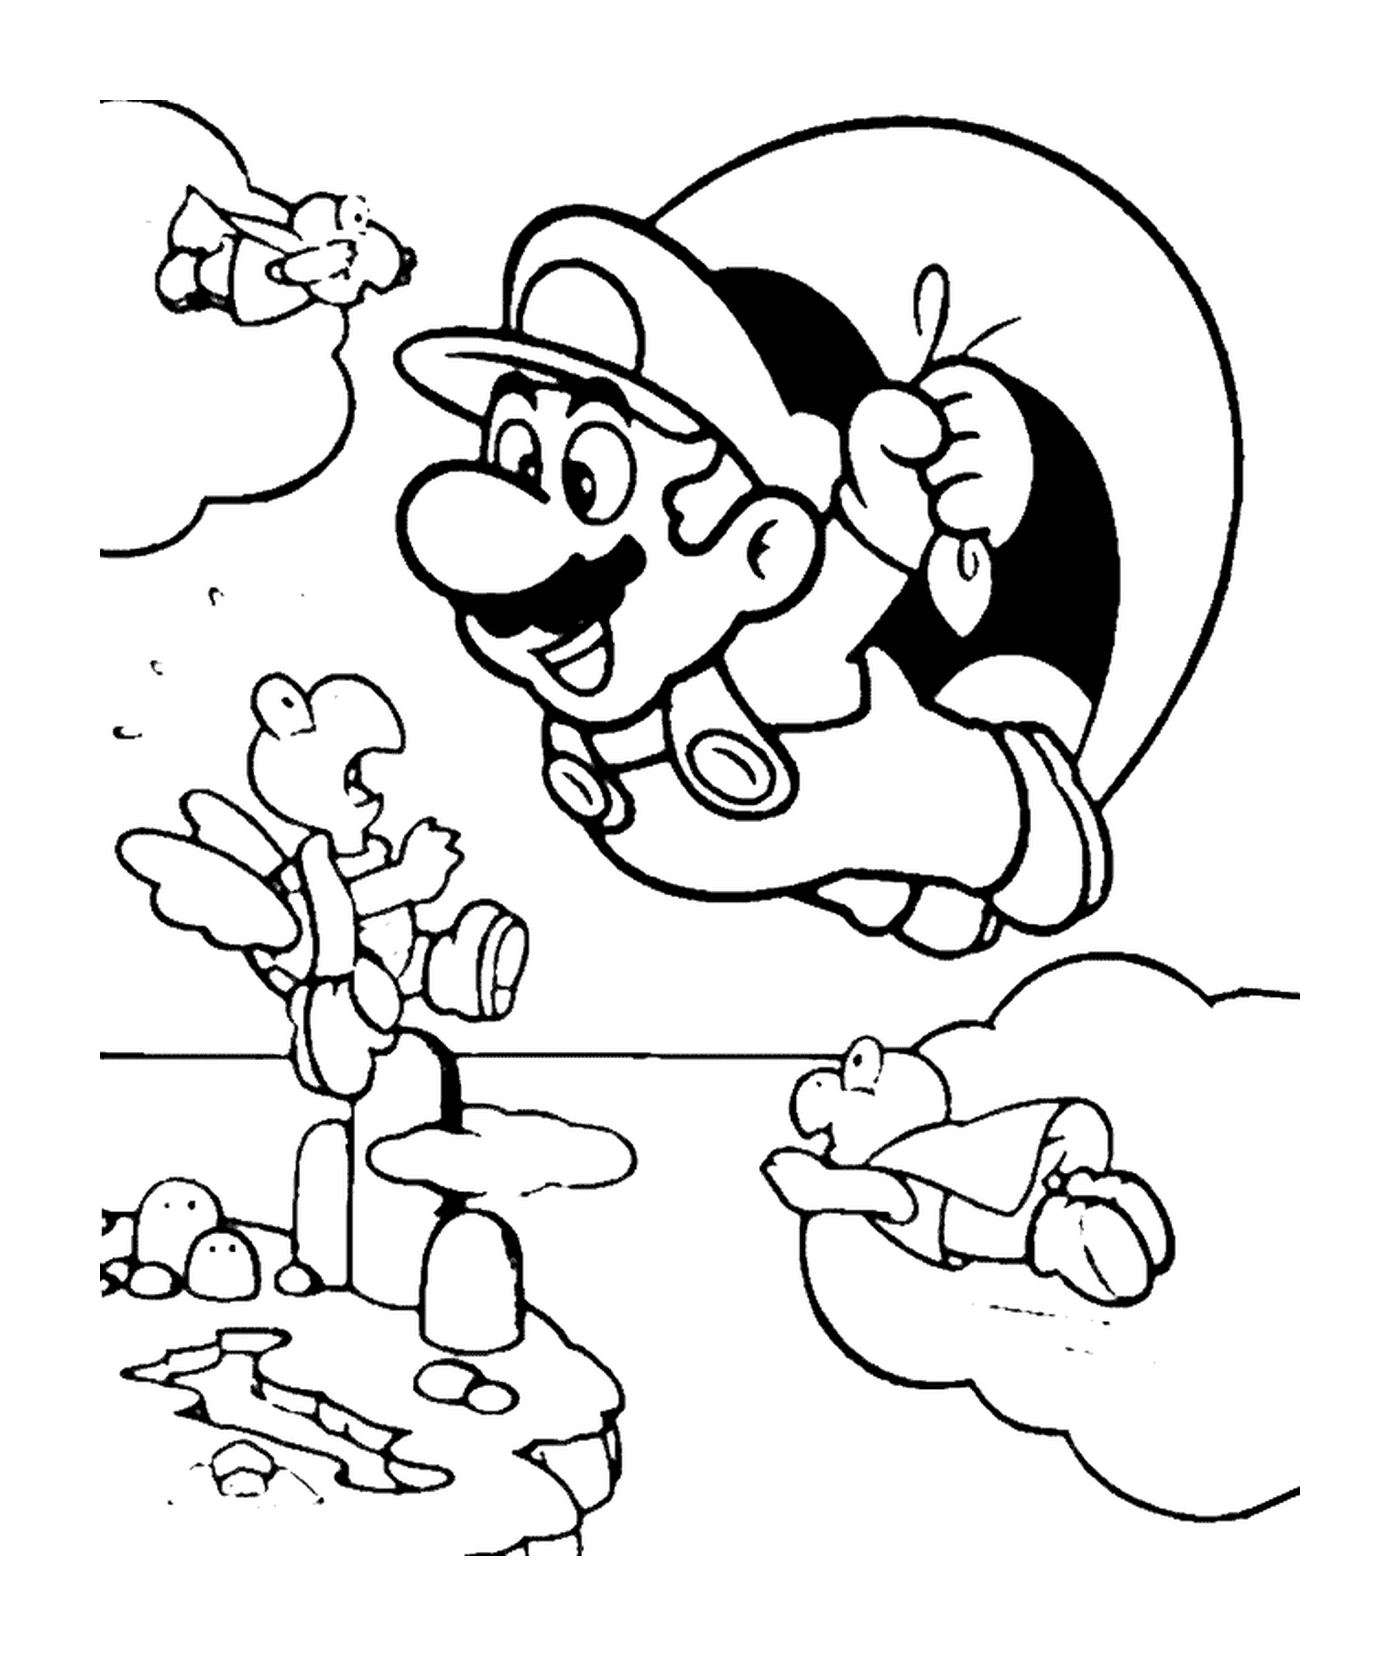  Марио летит парашютом 